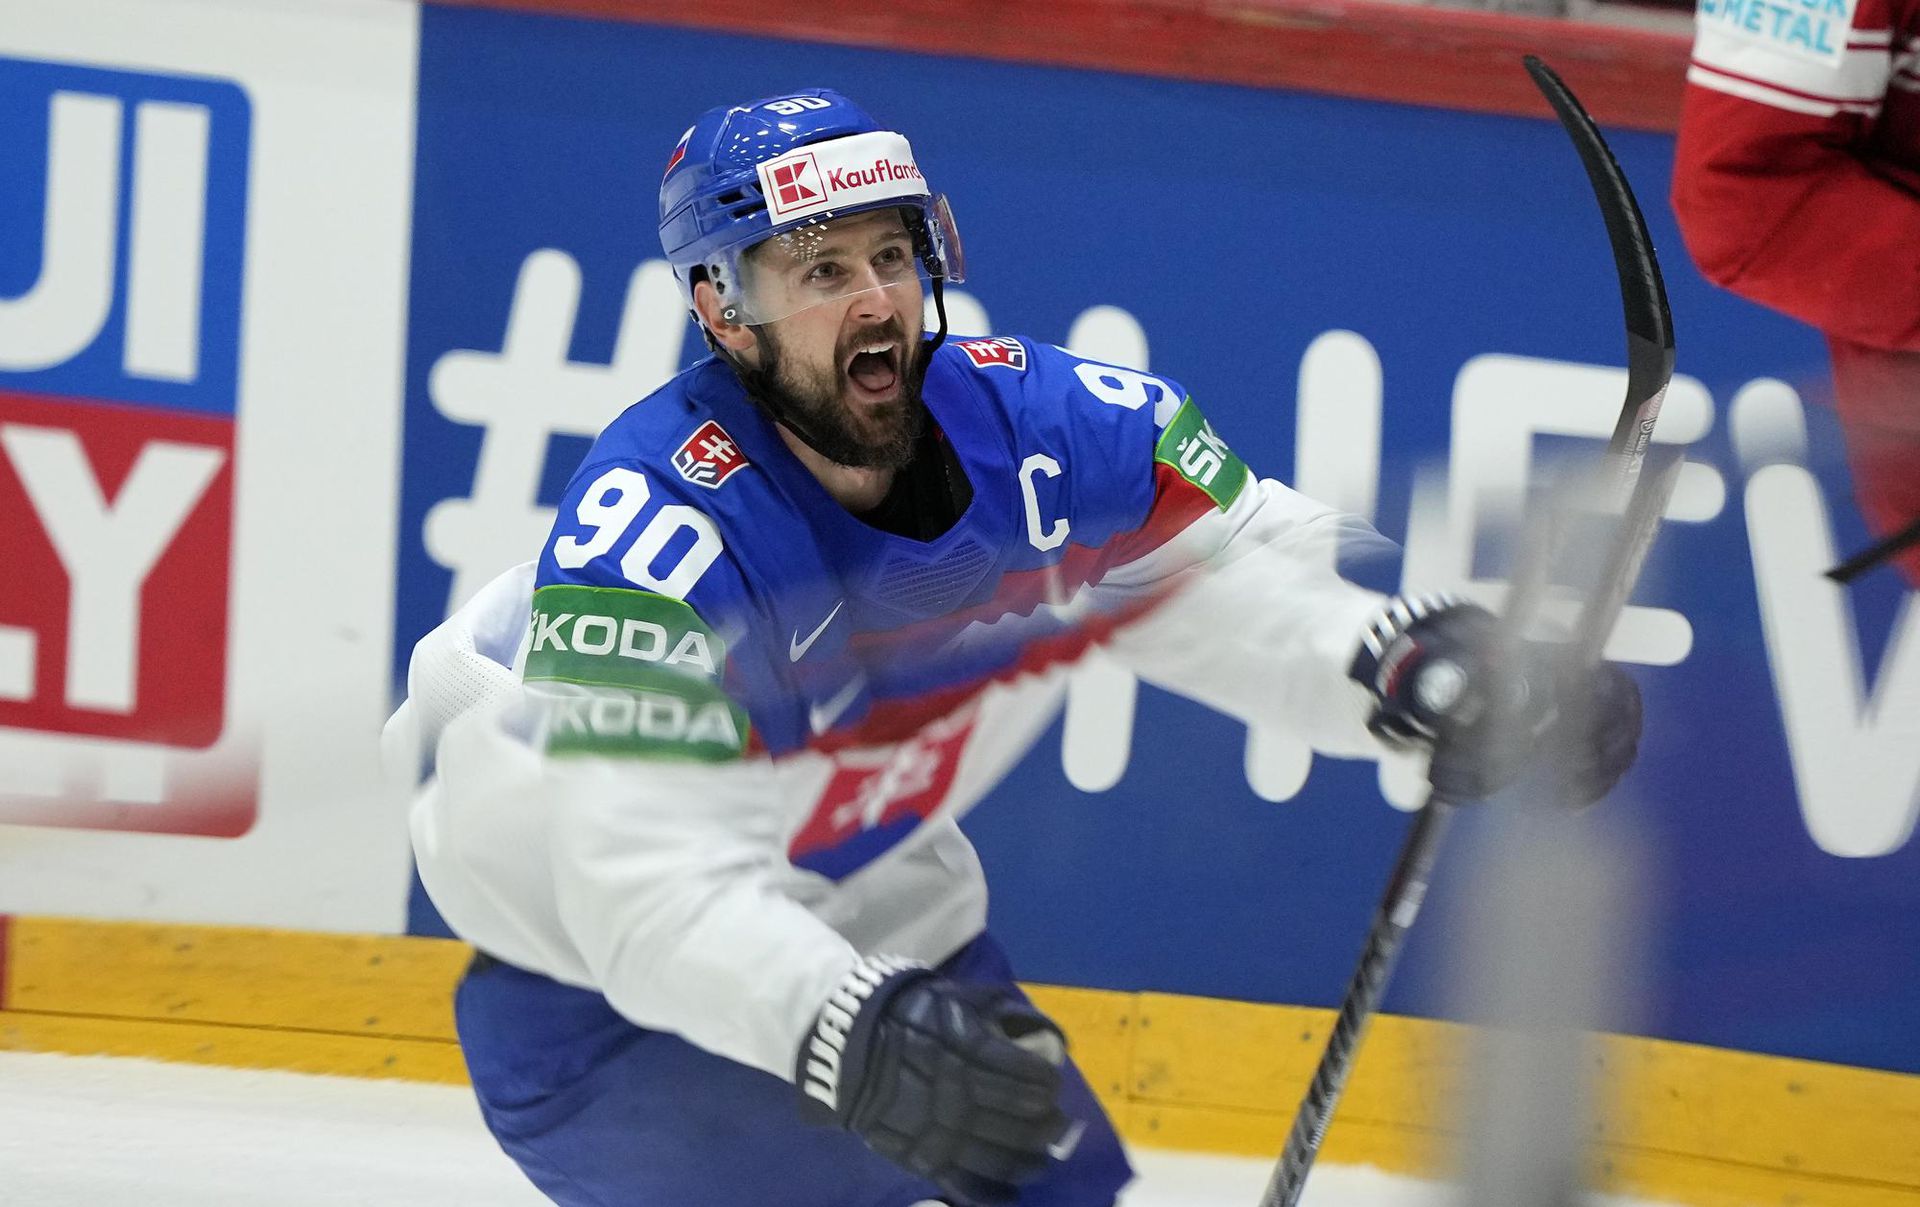 MS v hokeji 2022: Slovensko - Dánsko (Tomáš Tatar oslavuje druhý gól) Zdroj: SITA